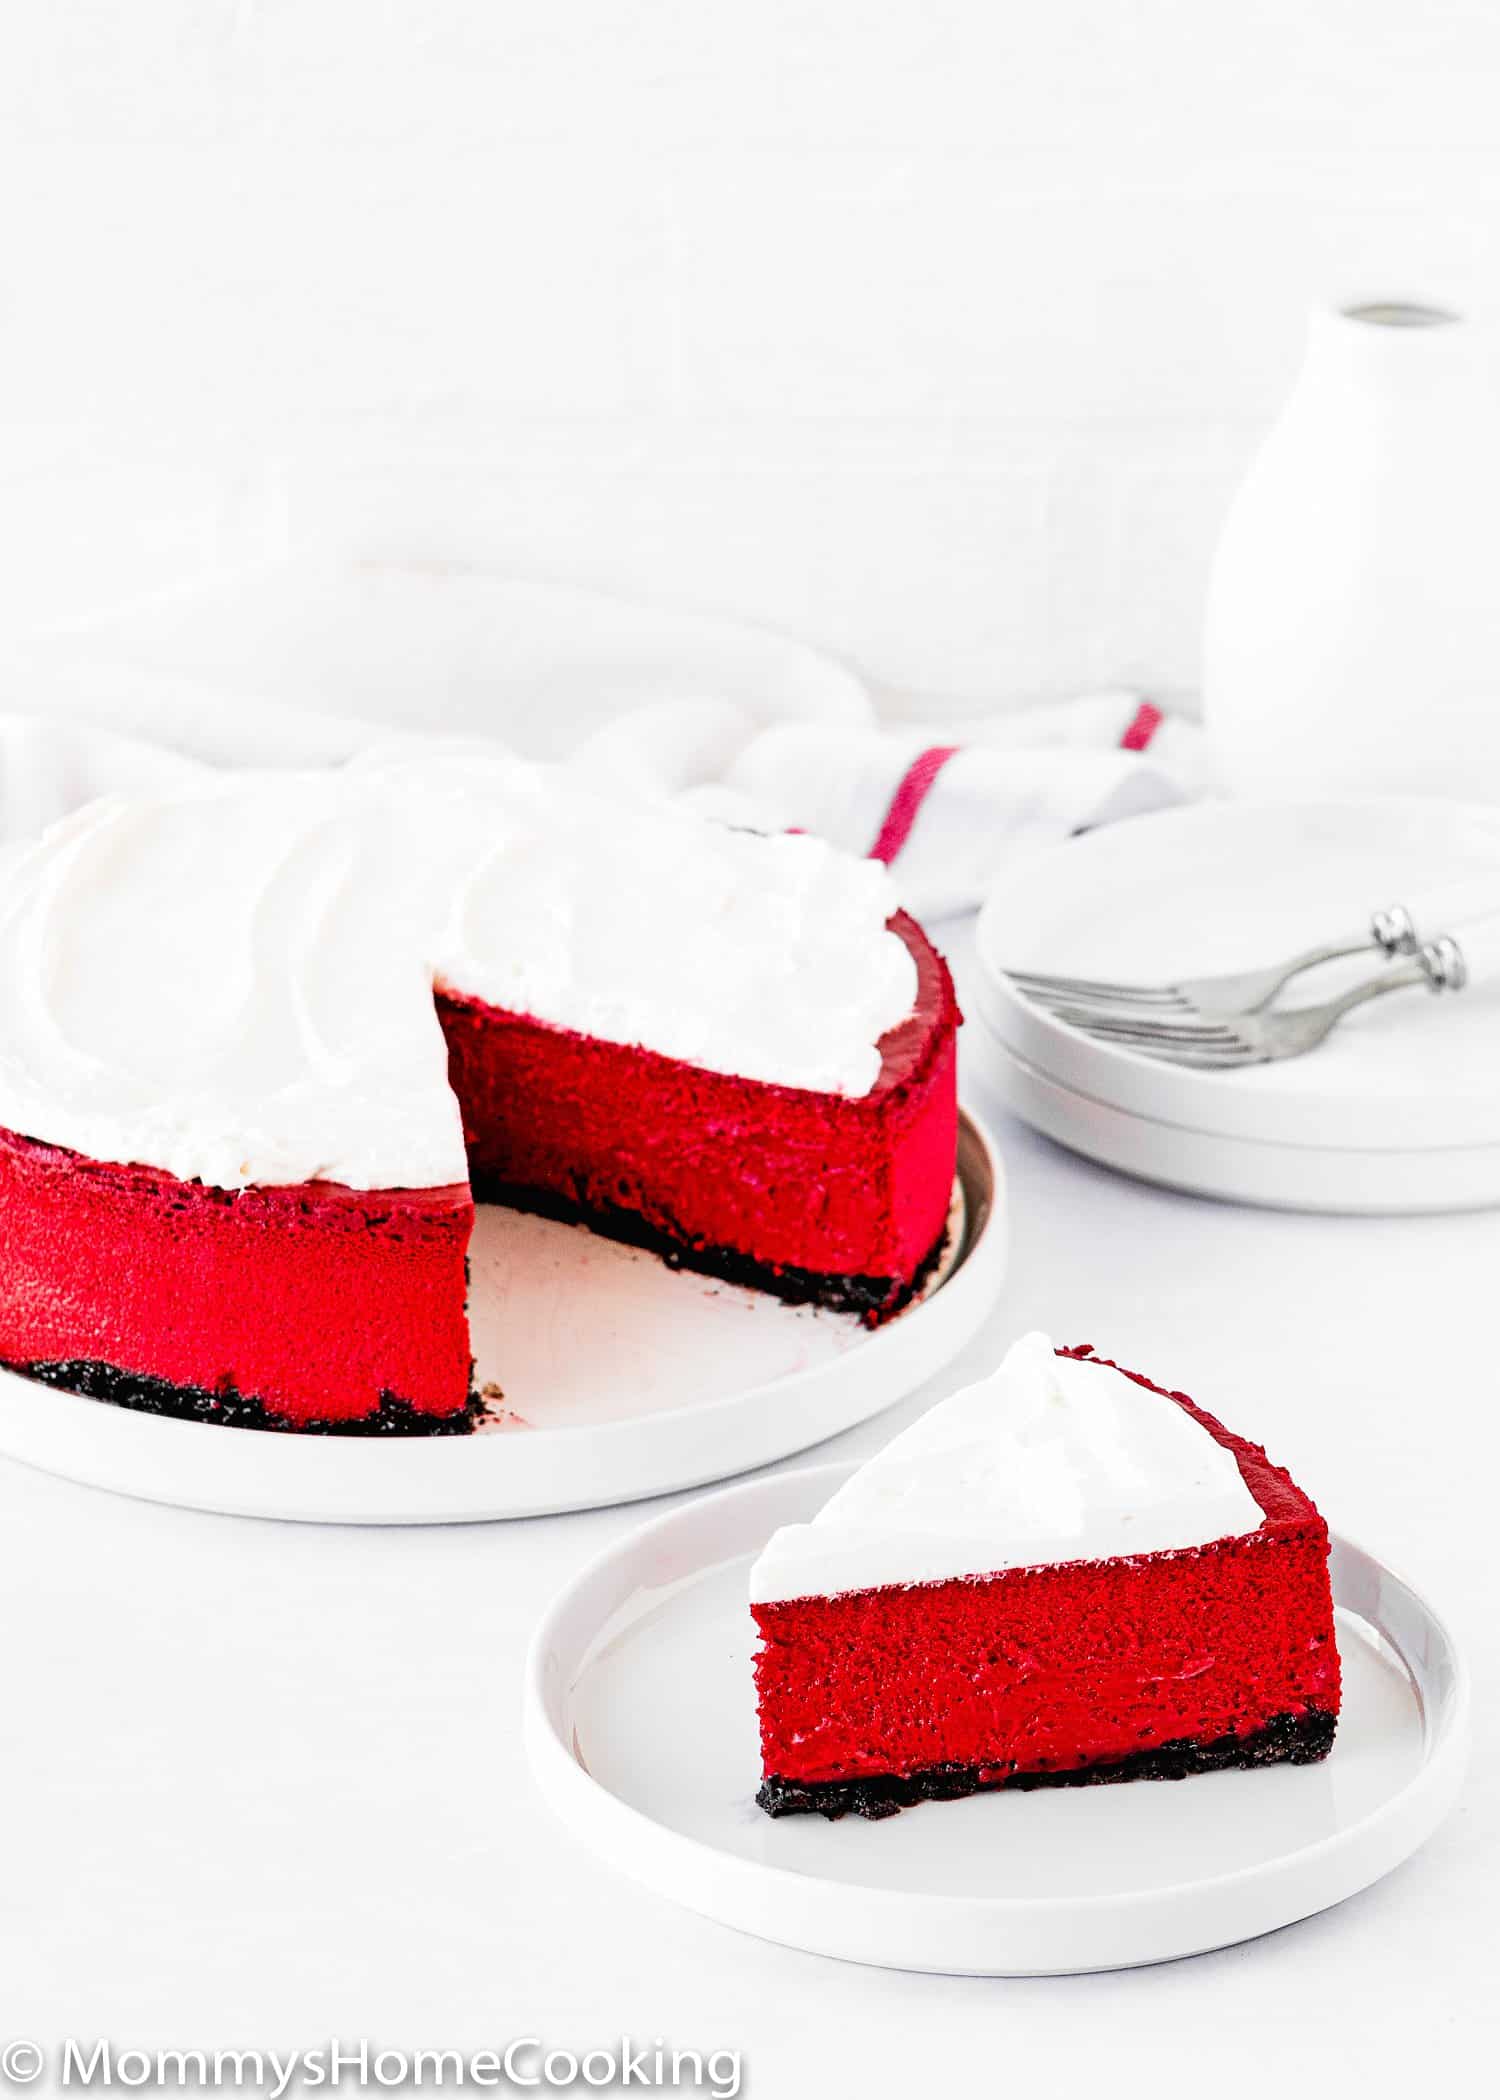 sliced Eggless Red Velvet Cheesecake on a plate.